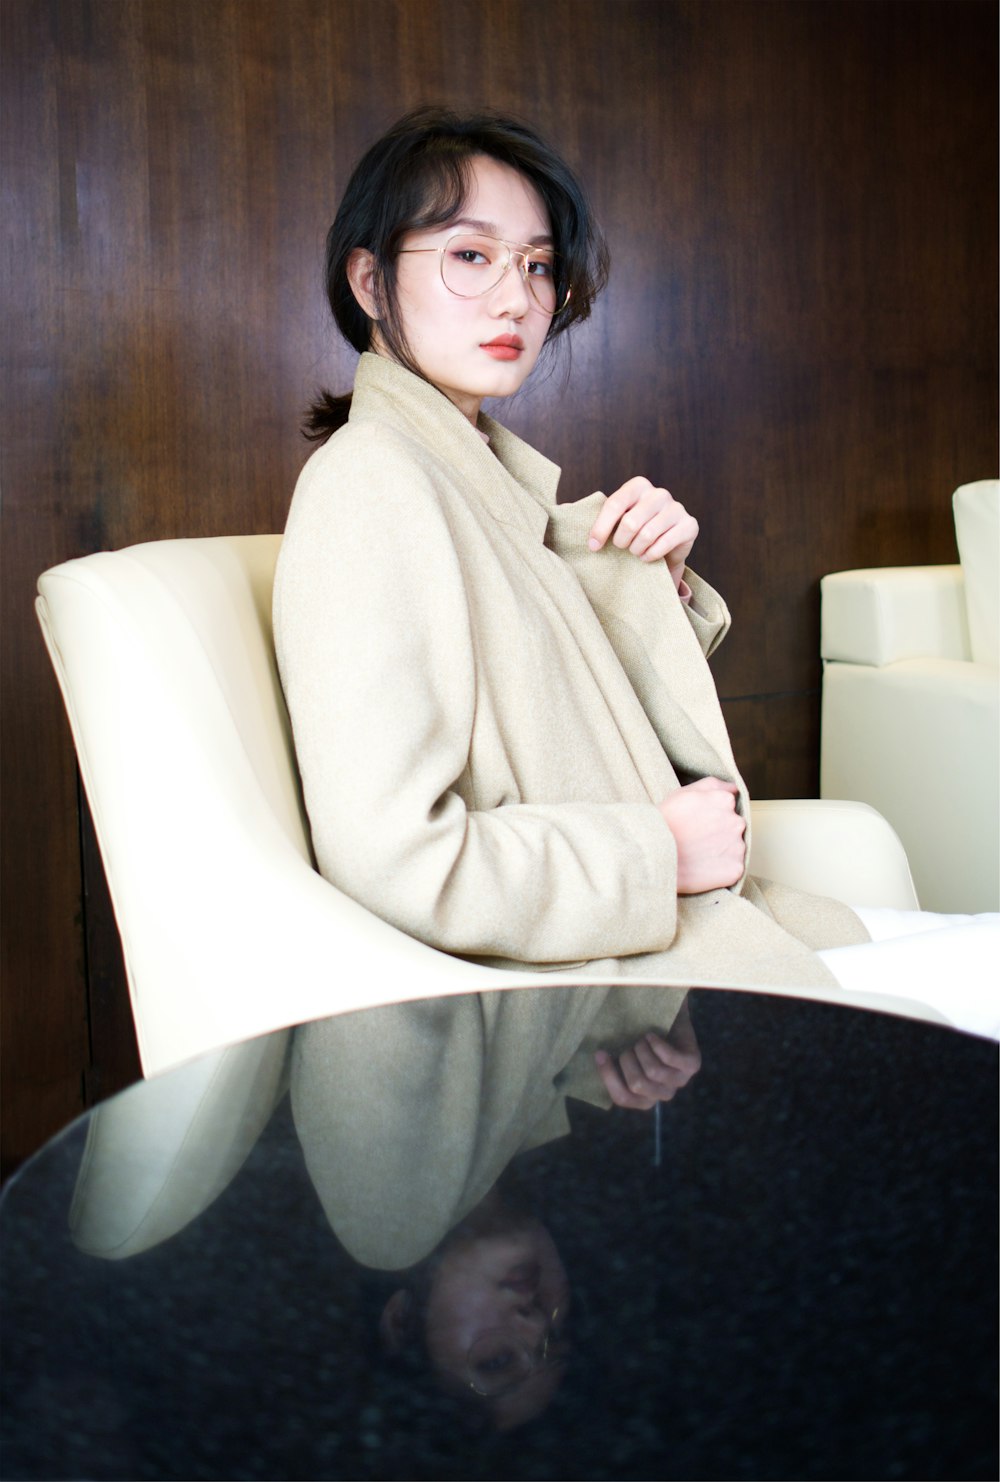 Fotografia de foco seletivo da mulher vestindo casaco marrom sentada na cadeira do sofá